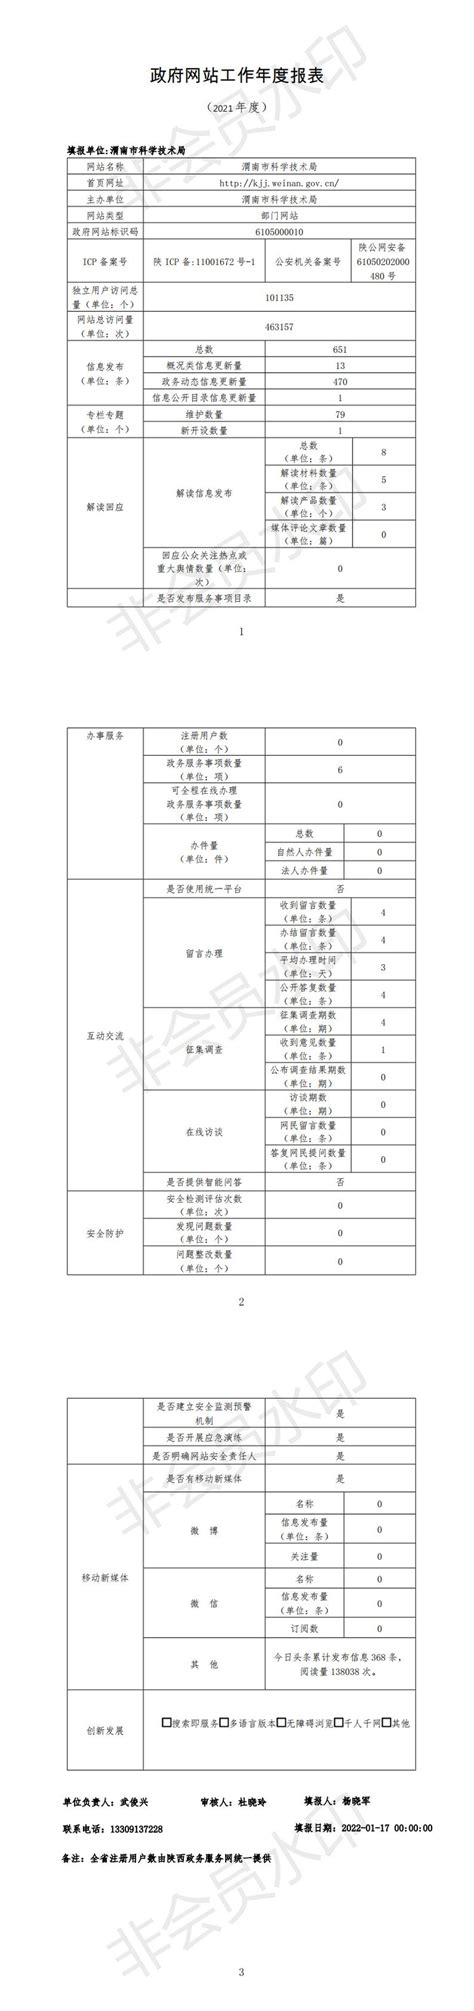 渭南市科学技术局2021年政府网站工作年度报表--渭南市人民政府